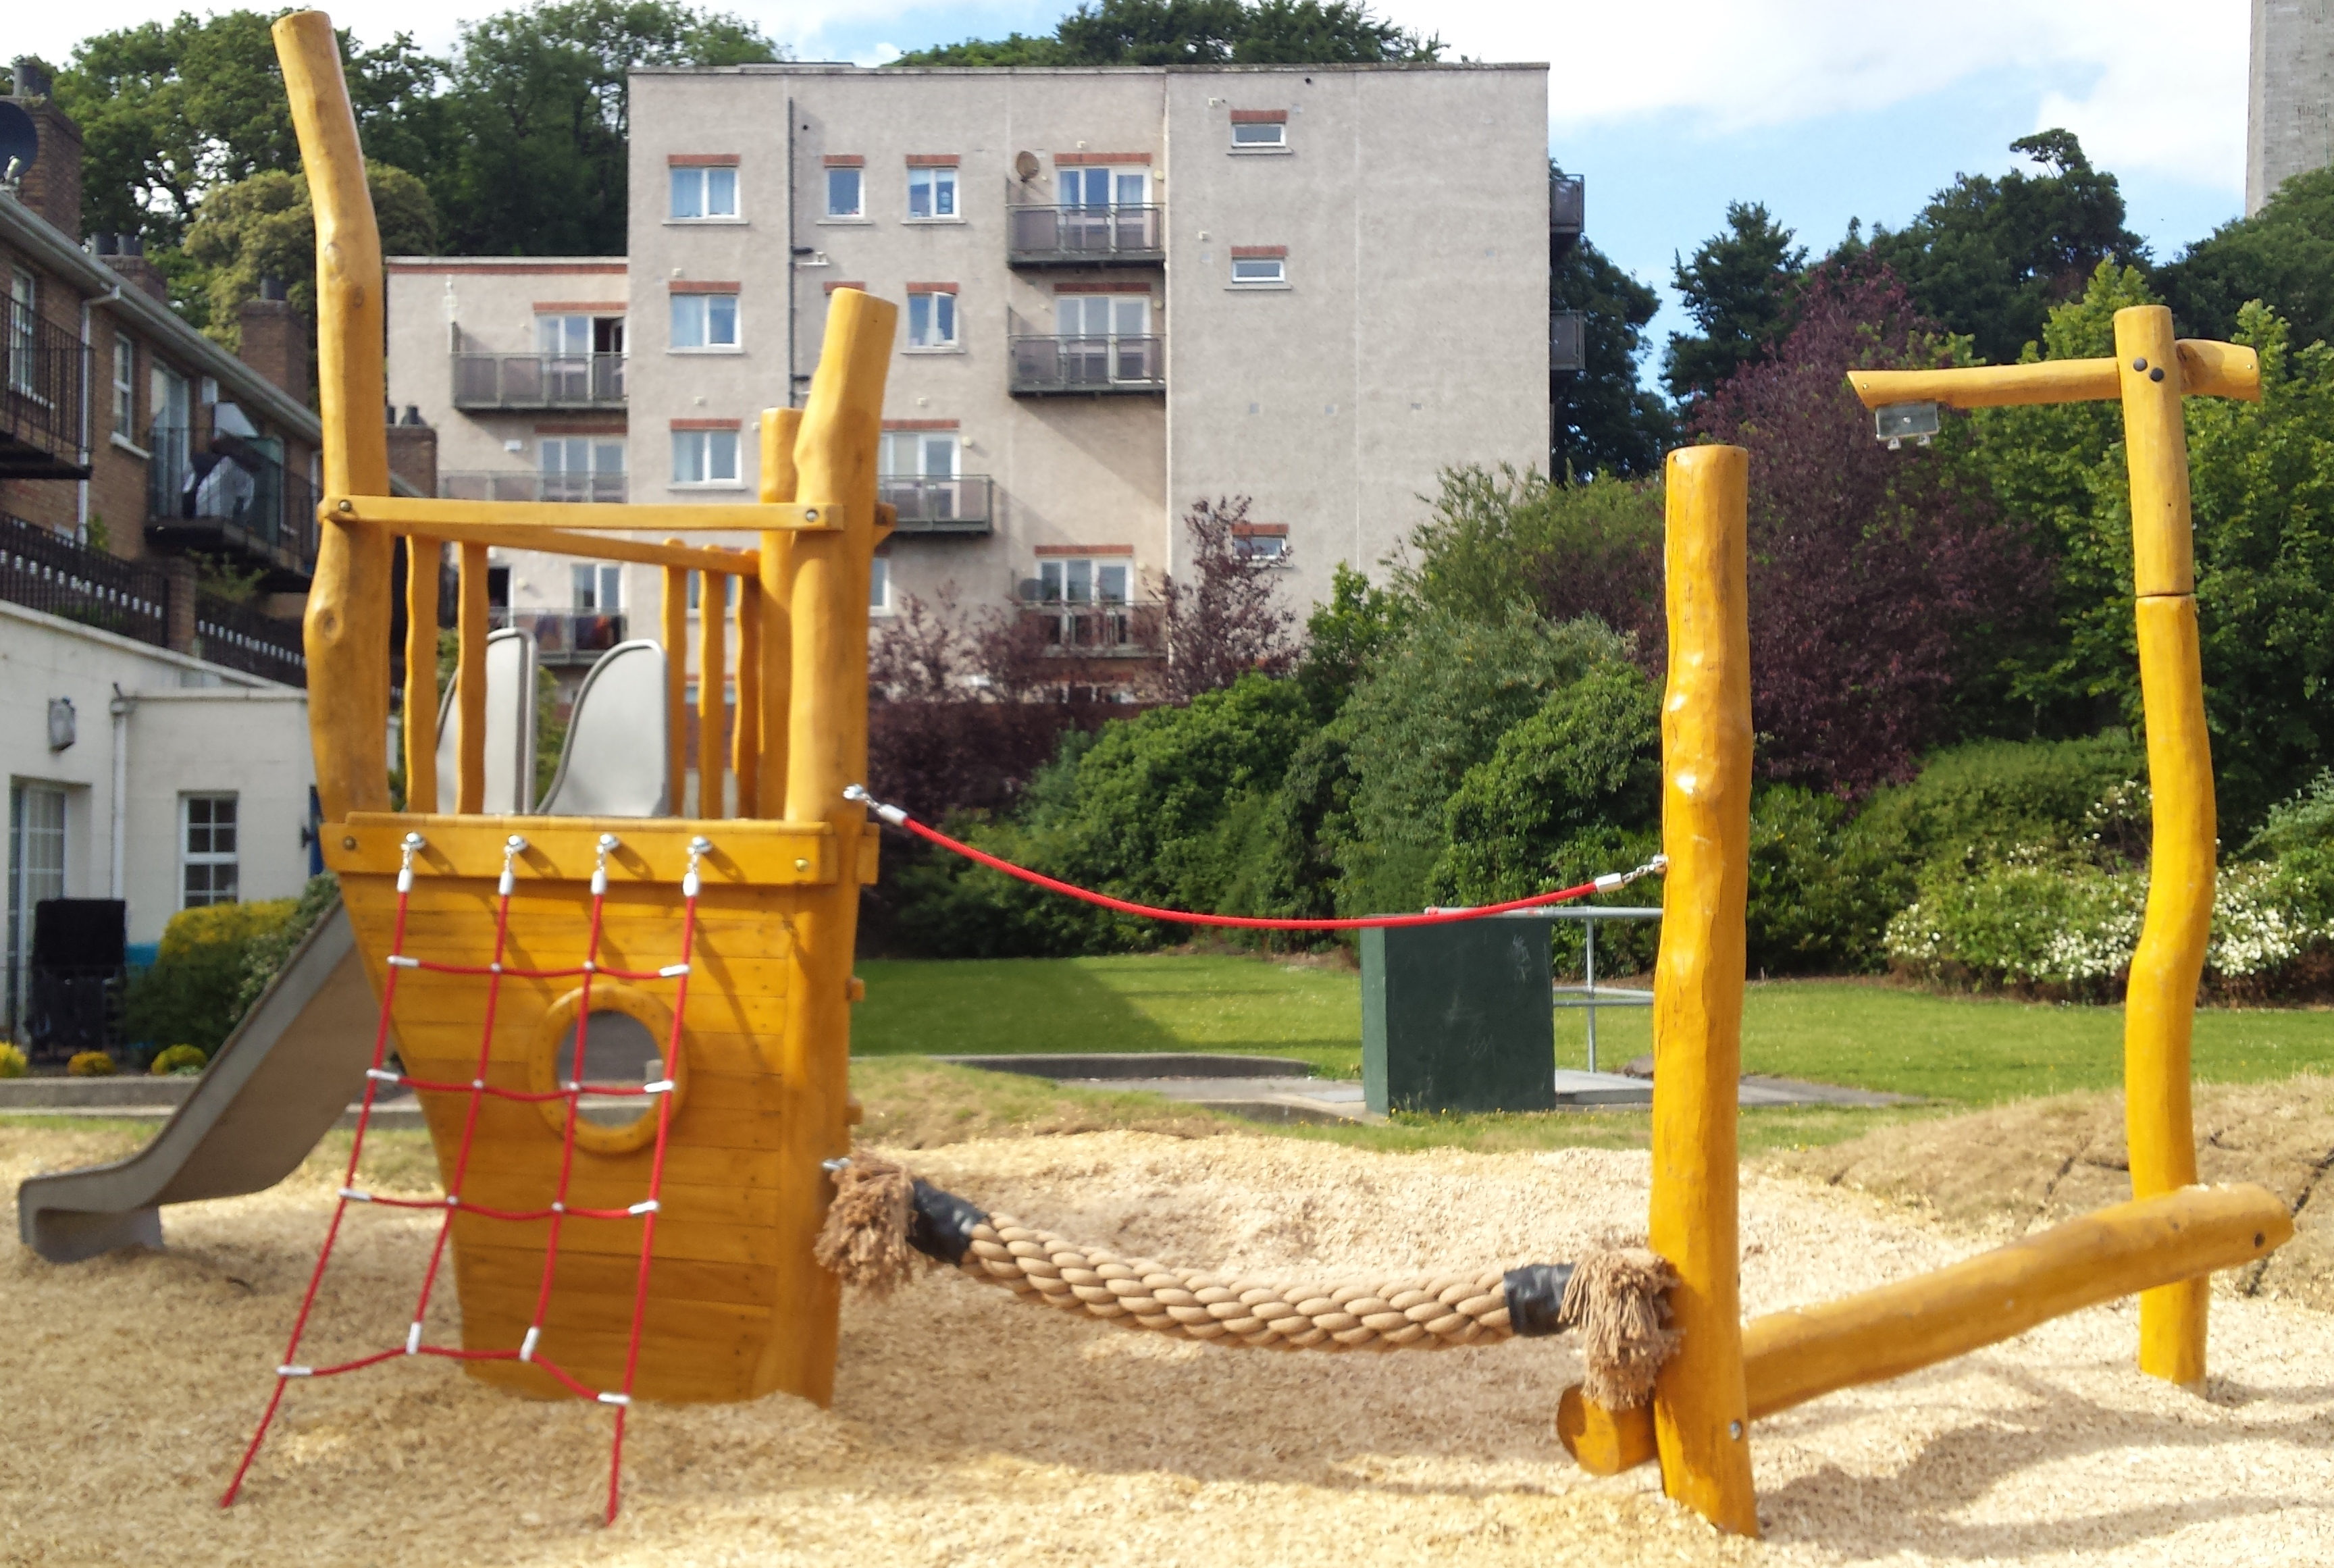 Dublin, Bridgewater | The Children's Playground Company